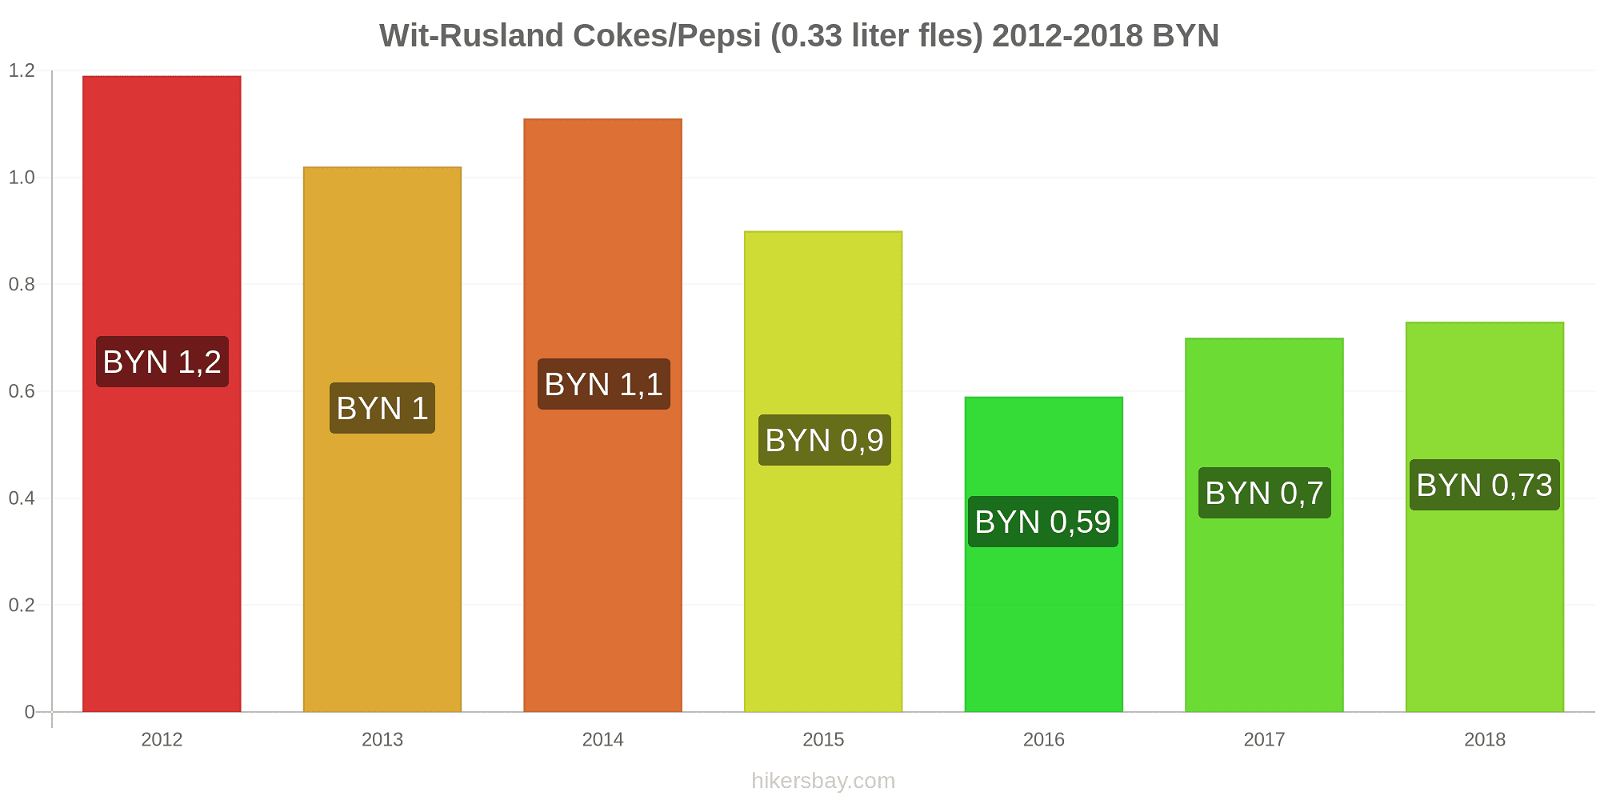 Wit-Rusland prijswijzigingen Coca-Cola/Pepsi (0.33 liter fles) hikersbay.com